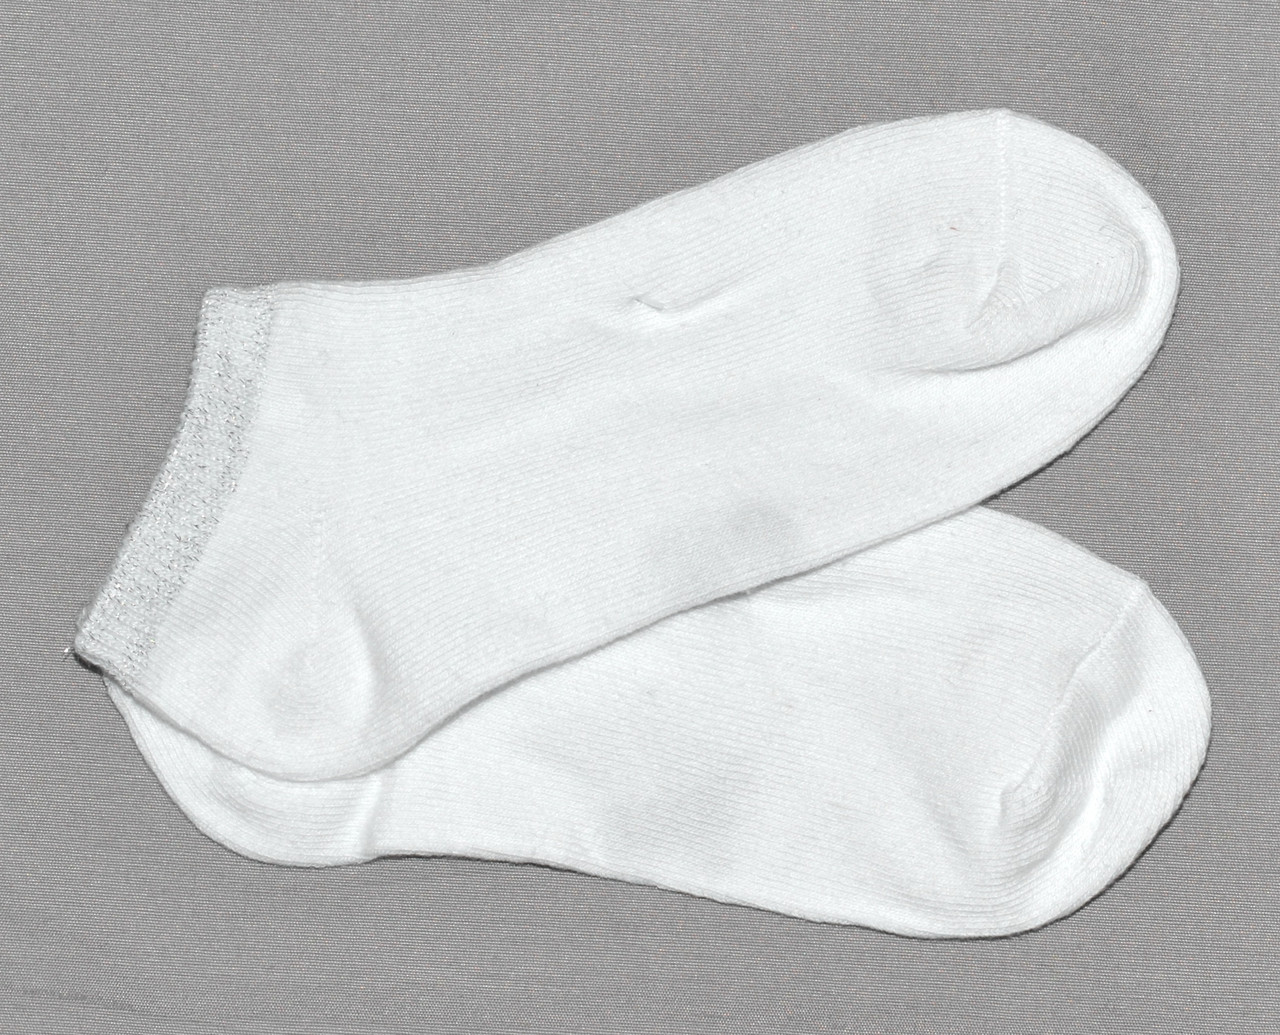 Носки короткие белые LIDL на размер 27-30